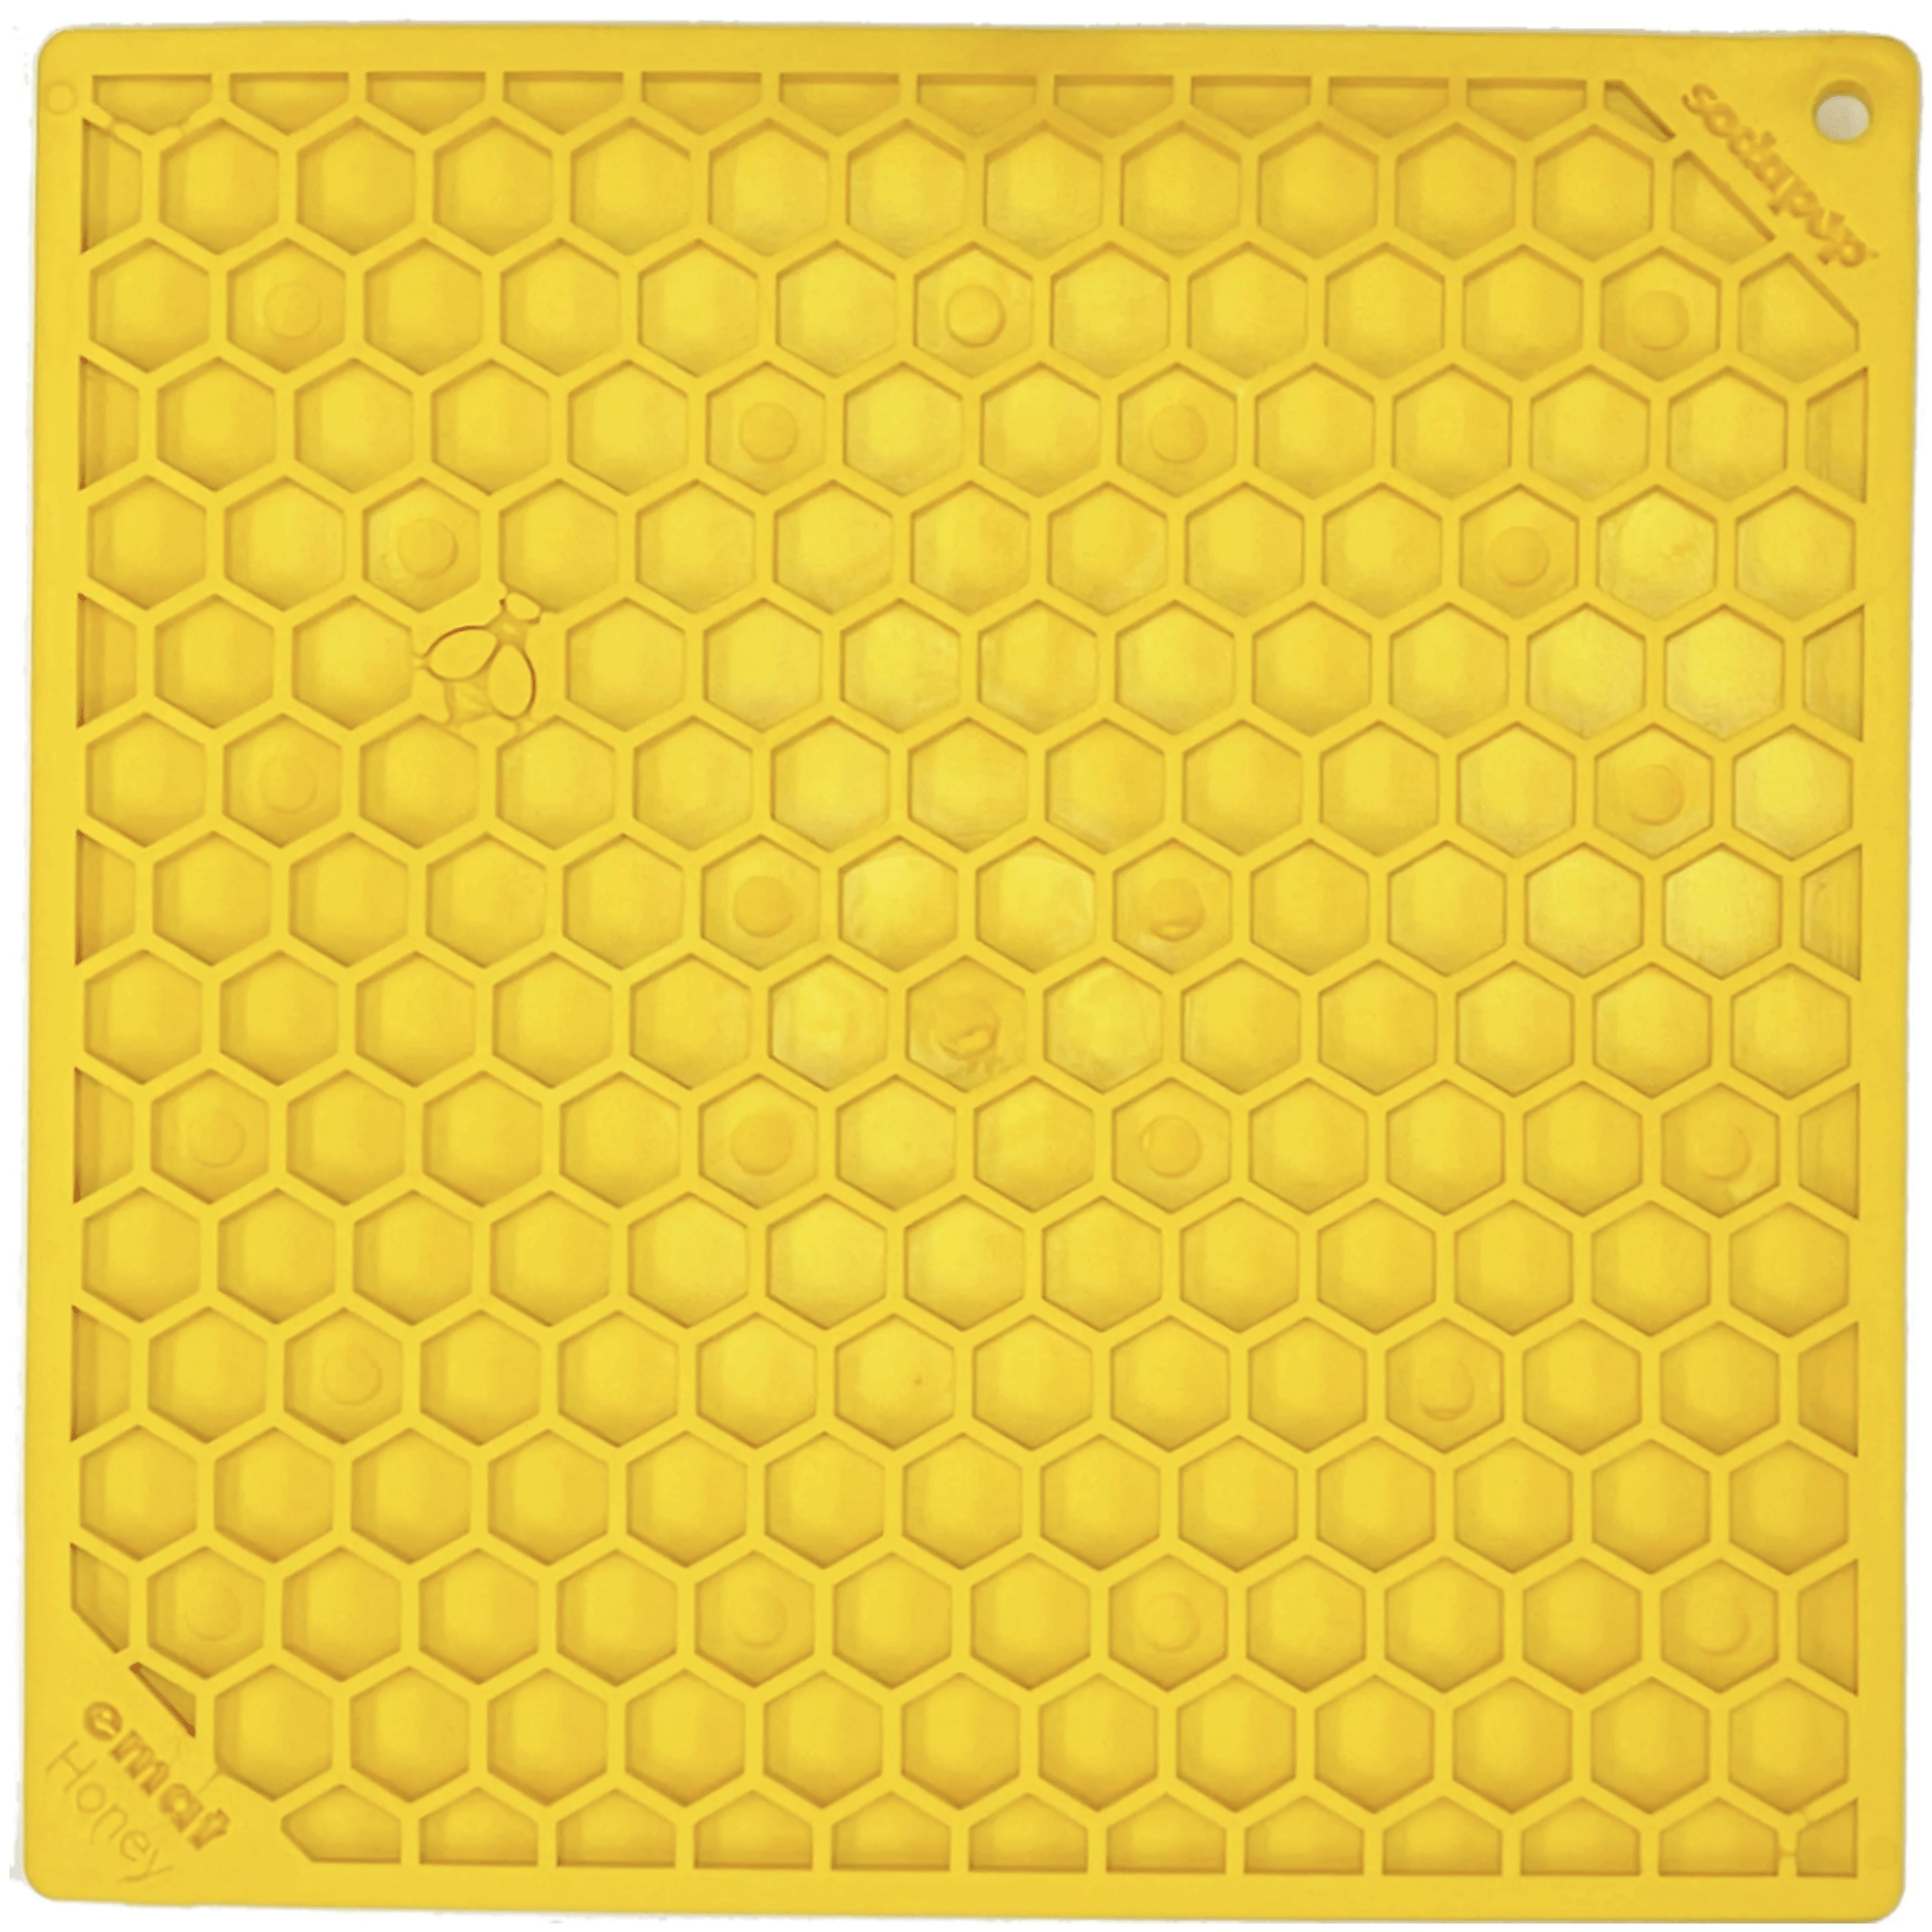 Enrichment Lick Mat - Honeycomb Large